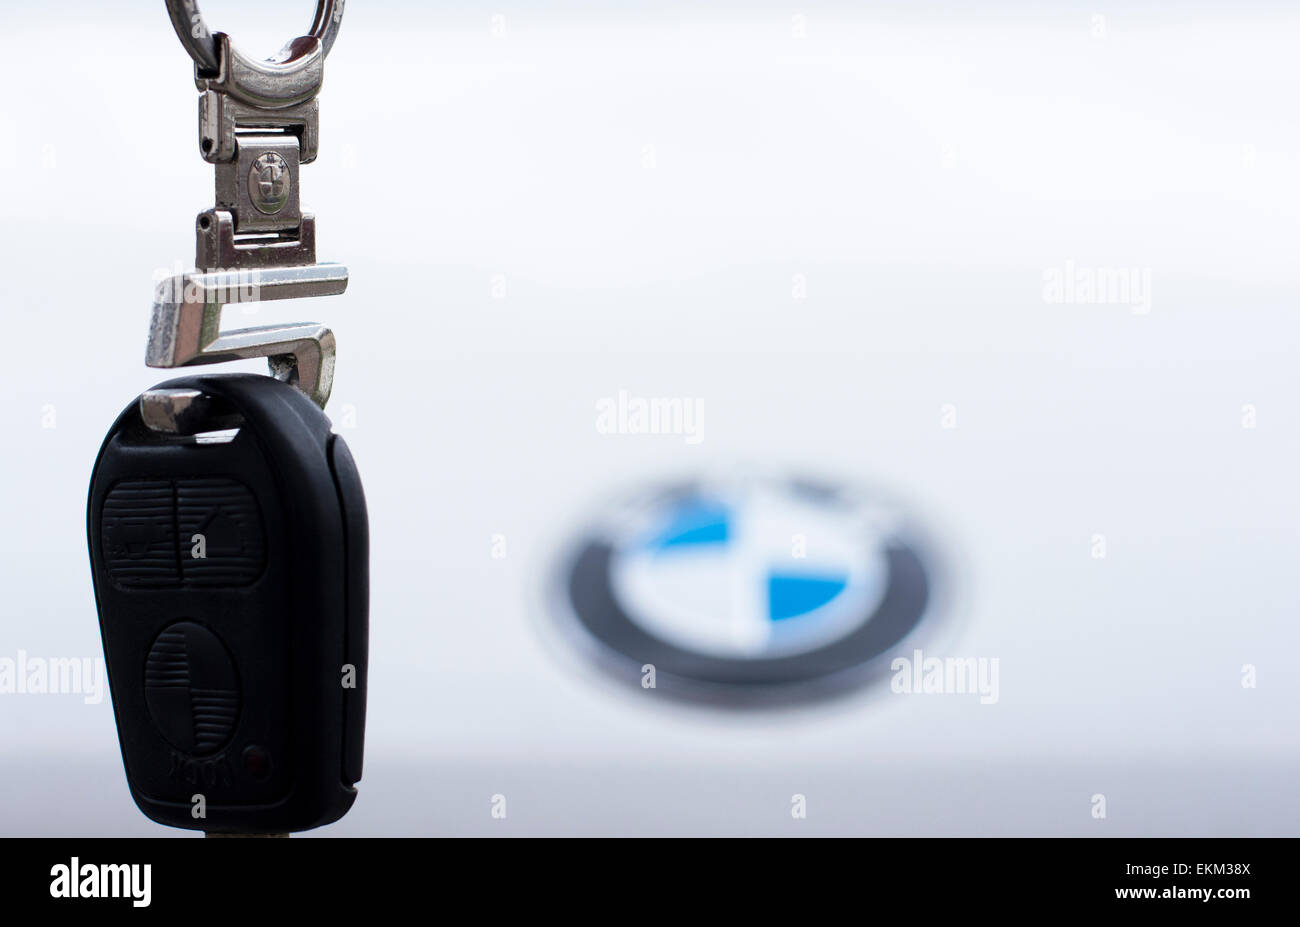 Sombor, Serbie - Avril 6 E,2015 : séance photo de différentes clés de voiture;clé de voiture de BMW 5 main tenant en l'air avec blanc BM Banque D'Images